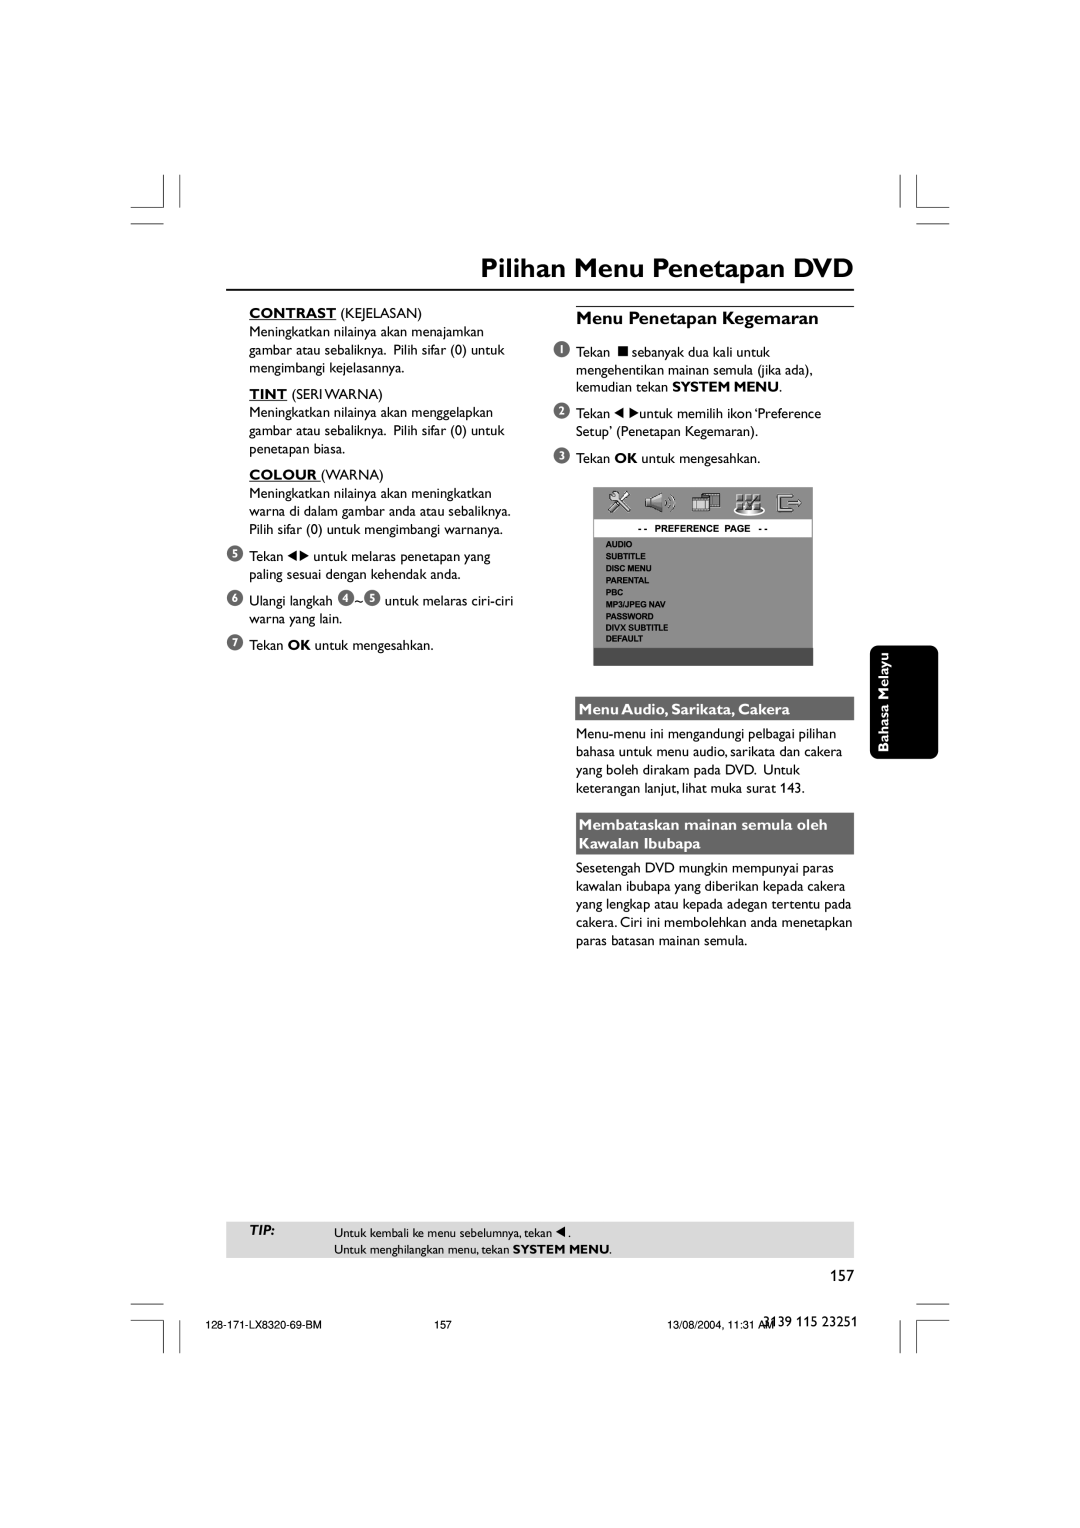 Philips LX8320SA Pilihan Menu Penetapan DVD, Menu Penetapan Kegemaran, Menu Audio, Sarikata, Cakera, Bahasa Melayu 